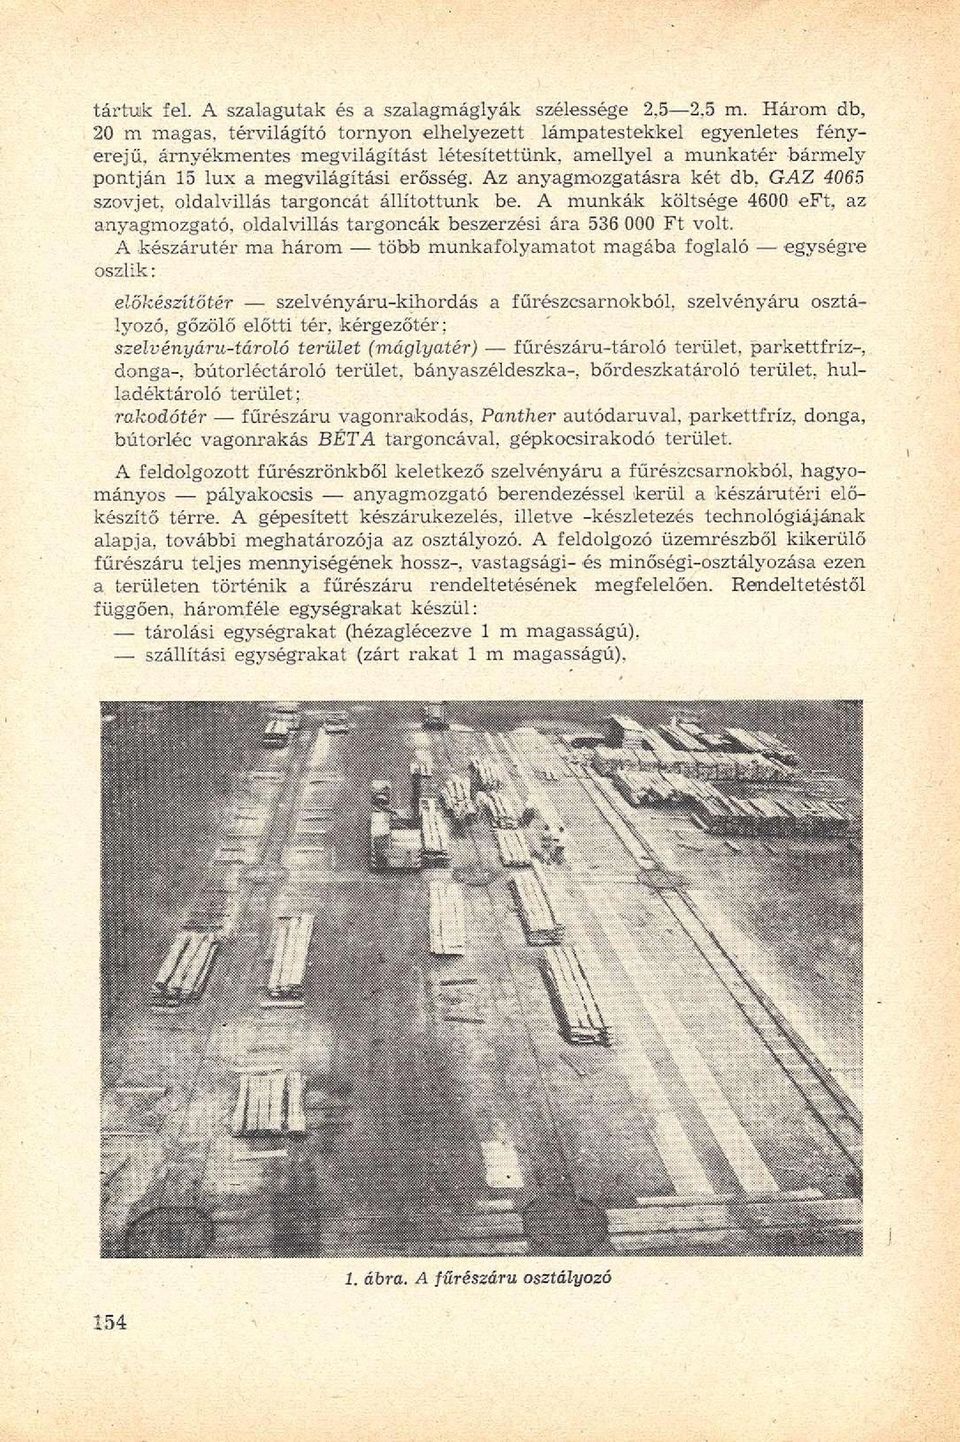 Az anyagmozgatásra két db, GAZ 4065 szovjet, oldalvillás targoncát állítottunk be. A munkák költsége 4600 eft, az anyagmozgató, oldalvillás targoncák beszerzési ára 536 000 Ft volt.